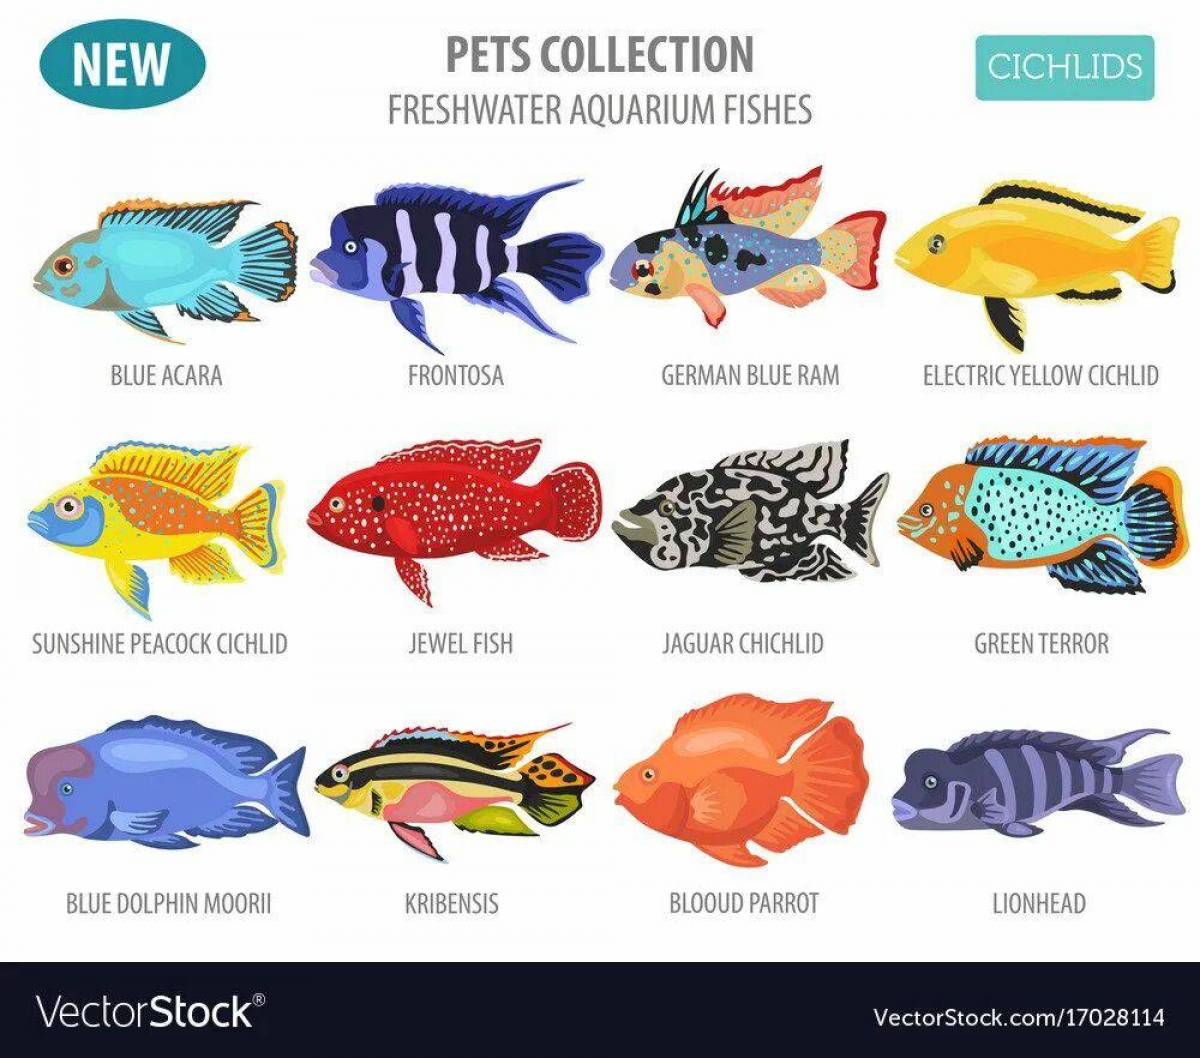 Аквариумная рыбка на букву т. Аквариумные рыбы плакат для детей. Аквариумные рыбки с названиями для детей. Аквариумные рыбки плакат для детей. Аквариумные рыбы рыбы плакат.